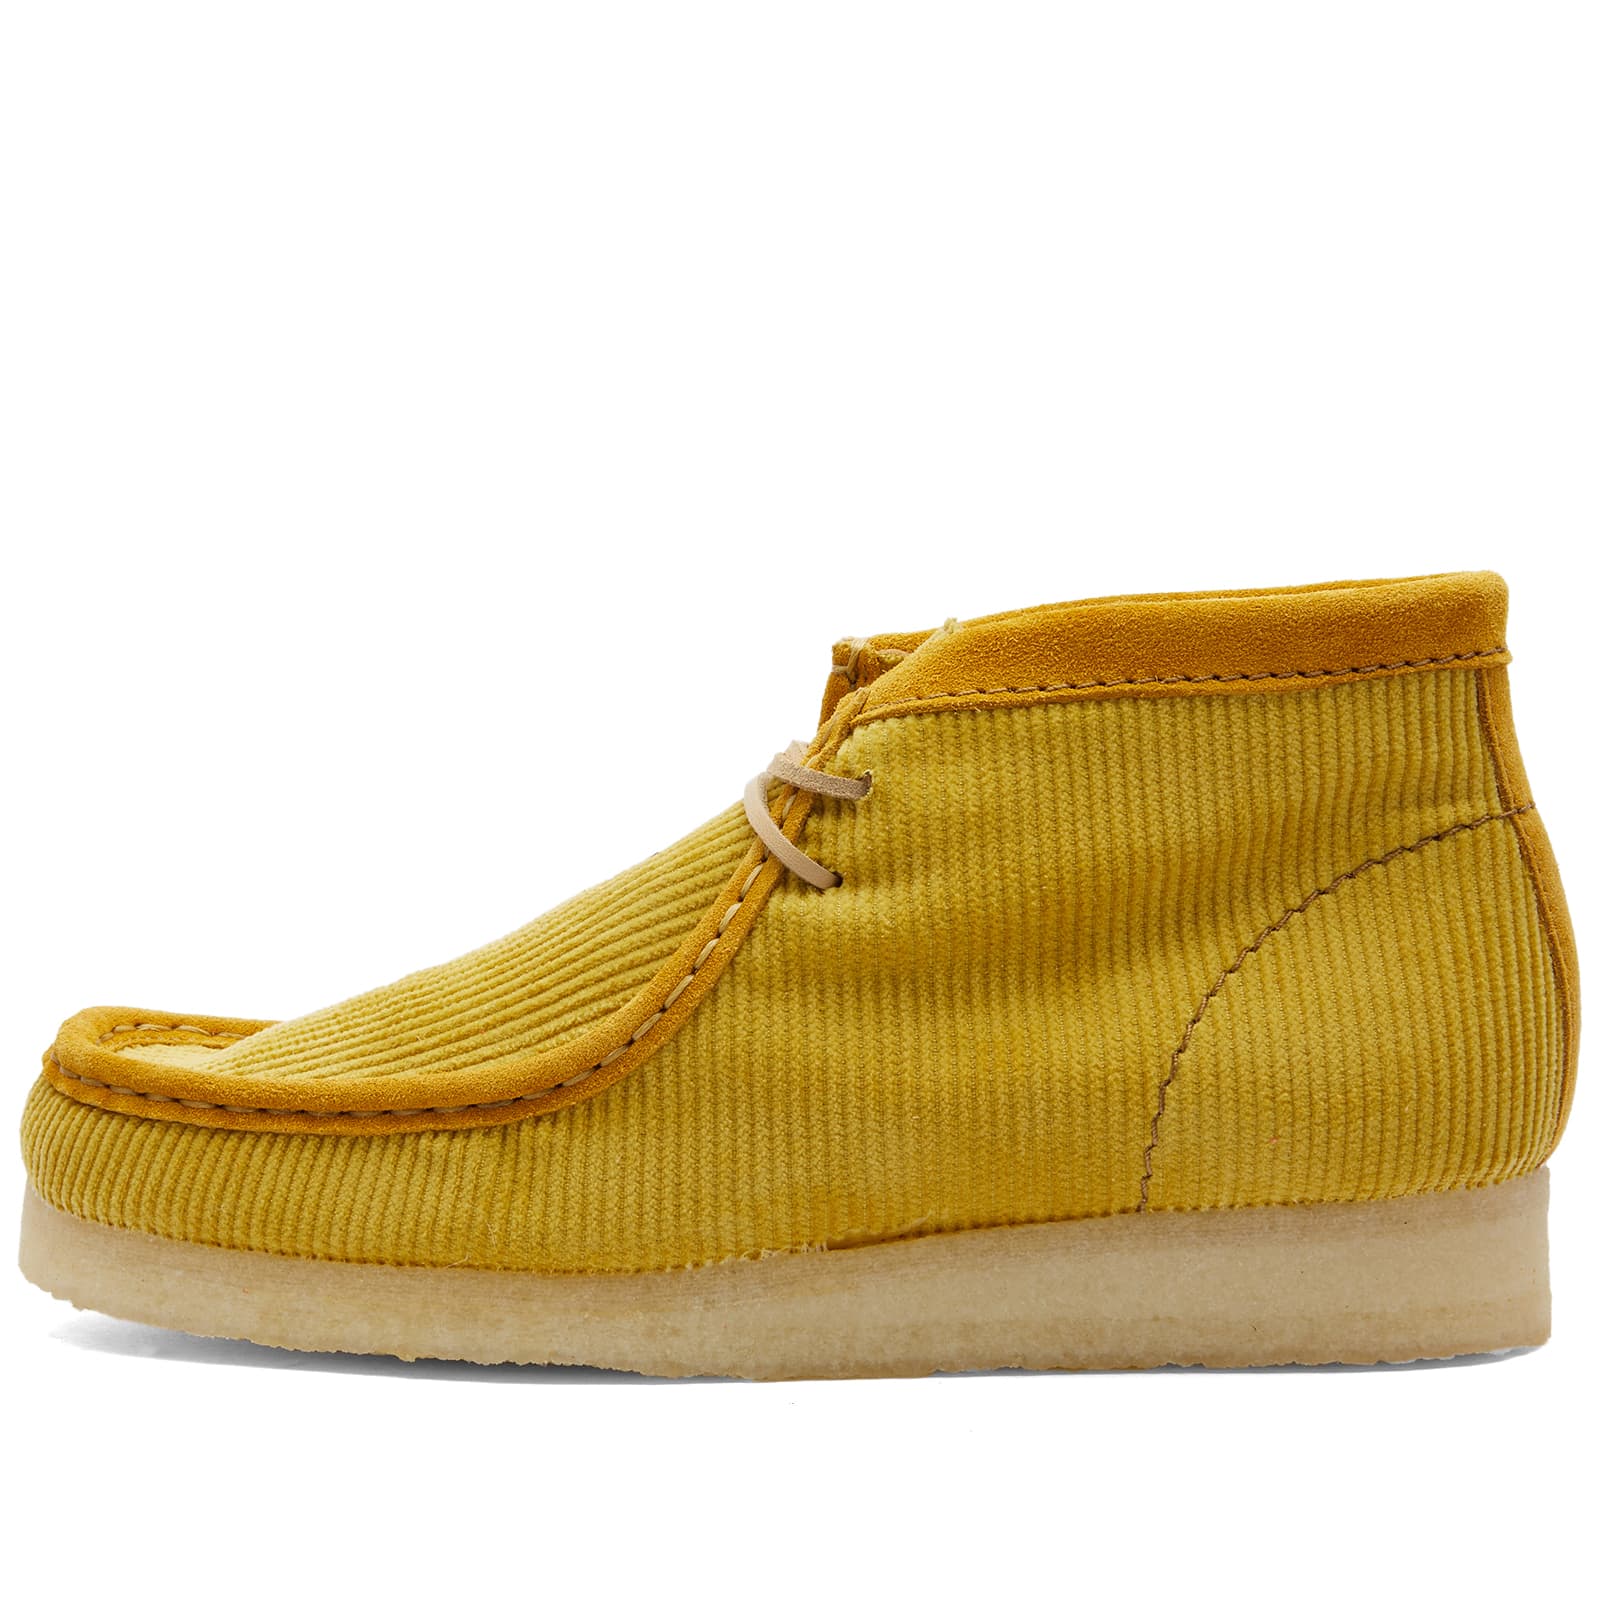 Ботинки Clarks Originals Mayde Wallabee, желтый ботинки clarks originals пустынный поход